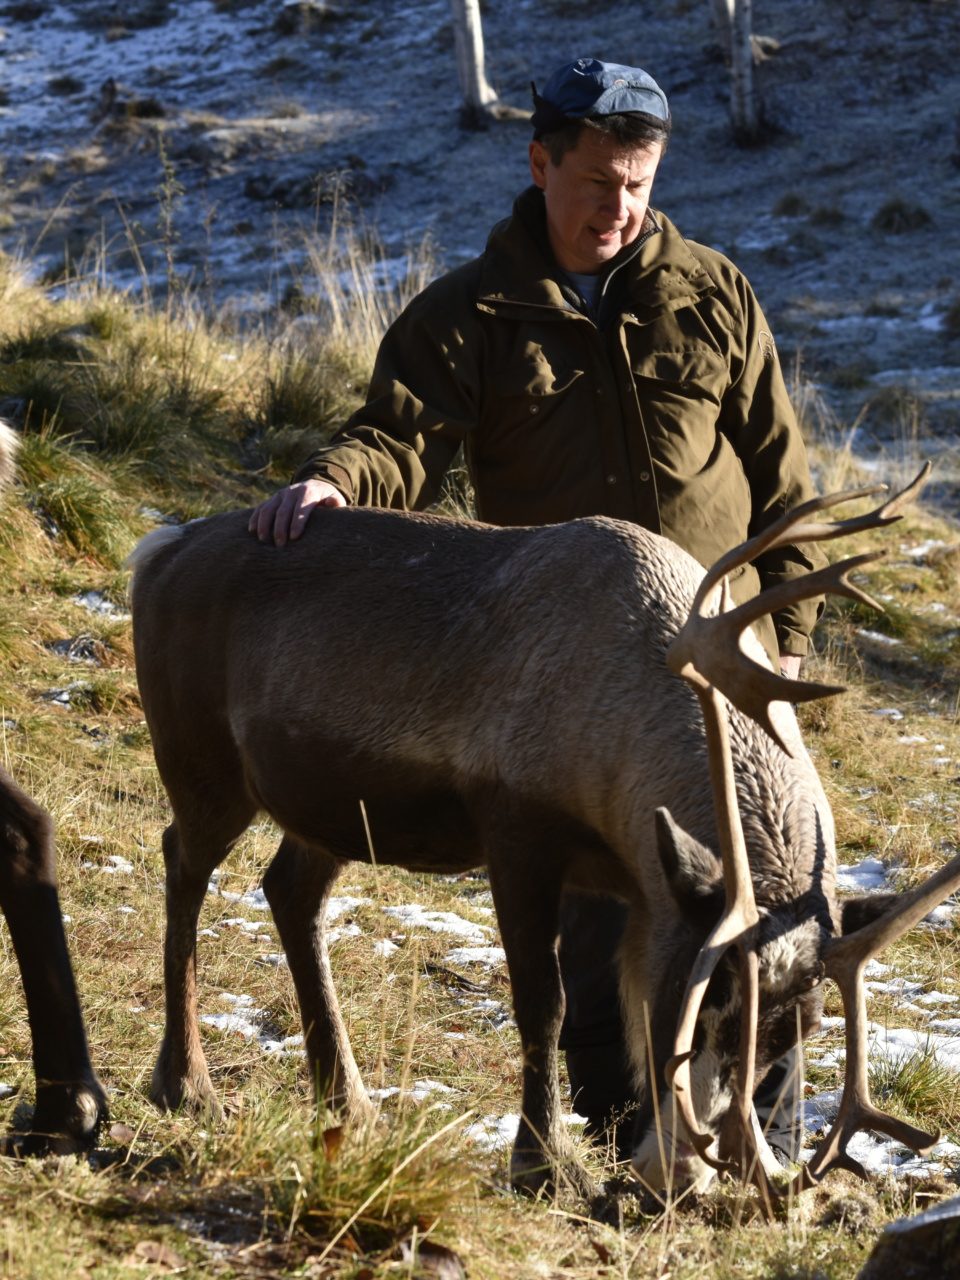 The reindeer herder Leif Jåma is a member of the Sami people in Norway.